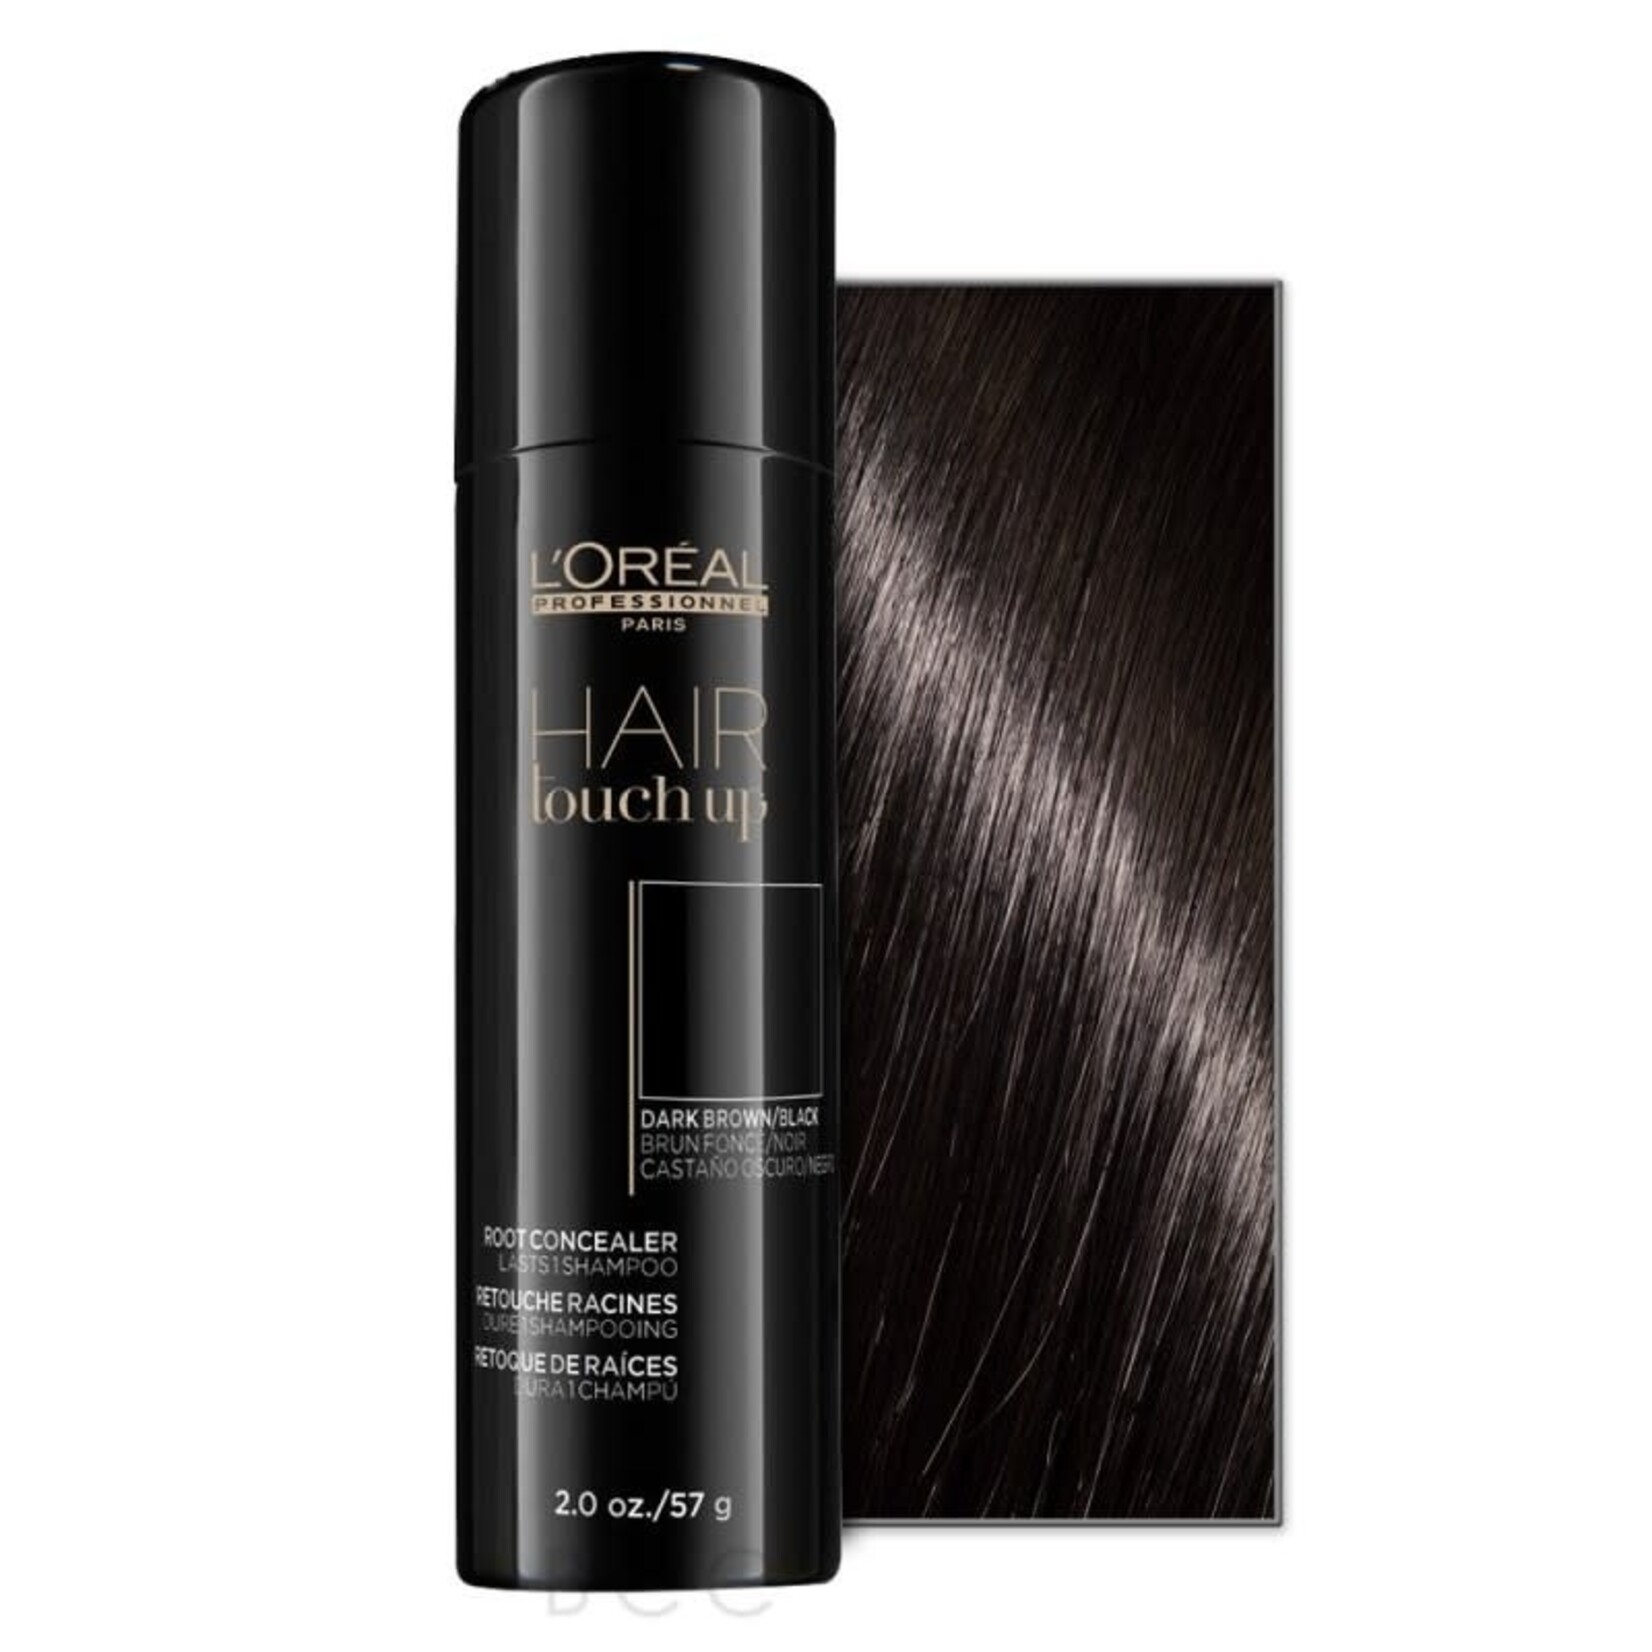 L'Oréal L'Oréal Professionnel - Hair Touch Up - 57g